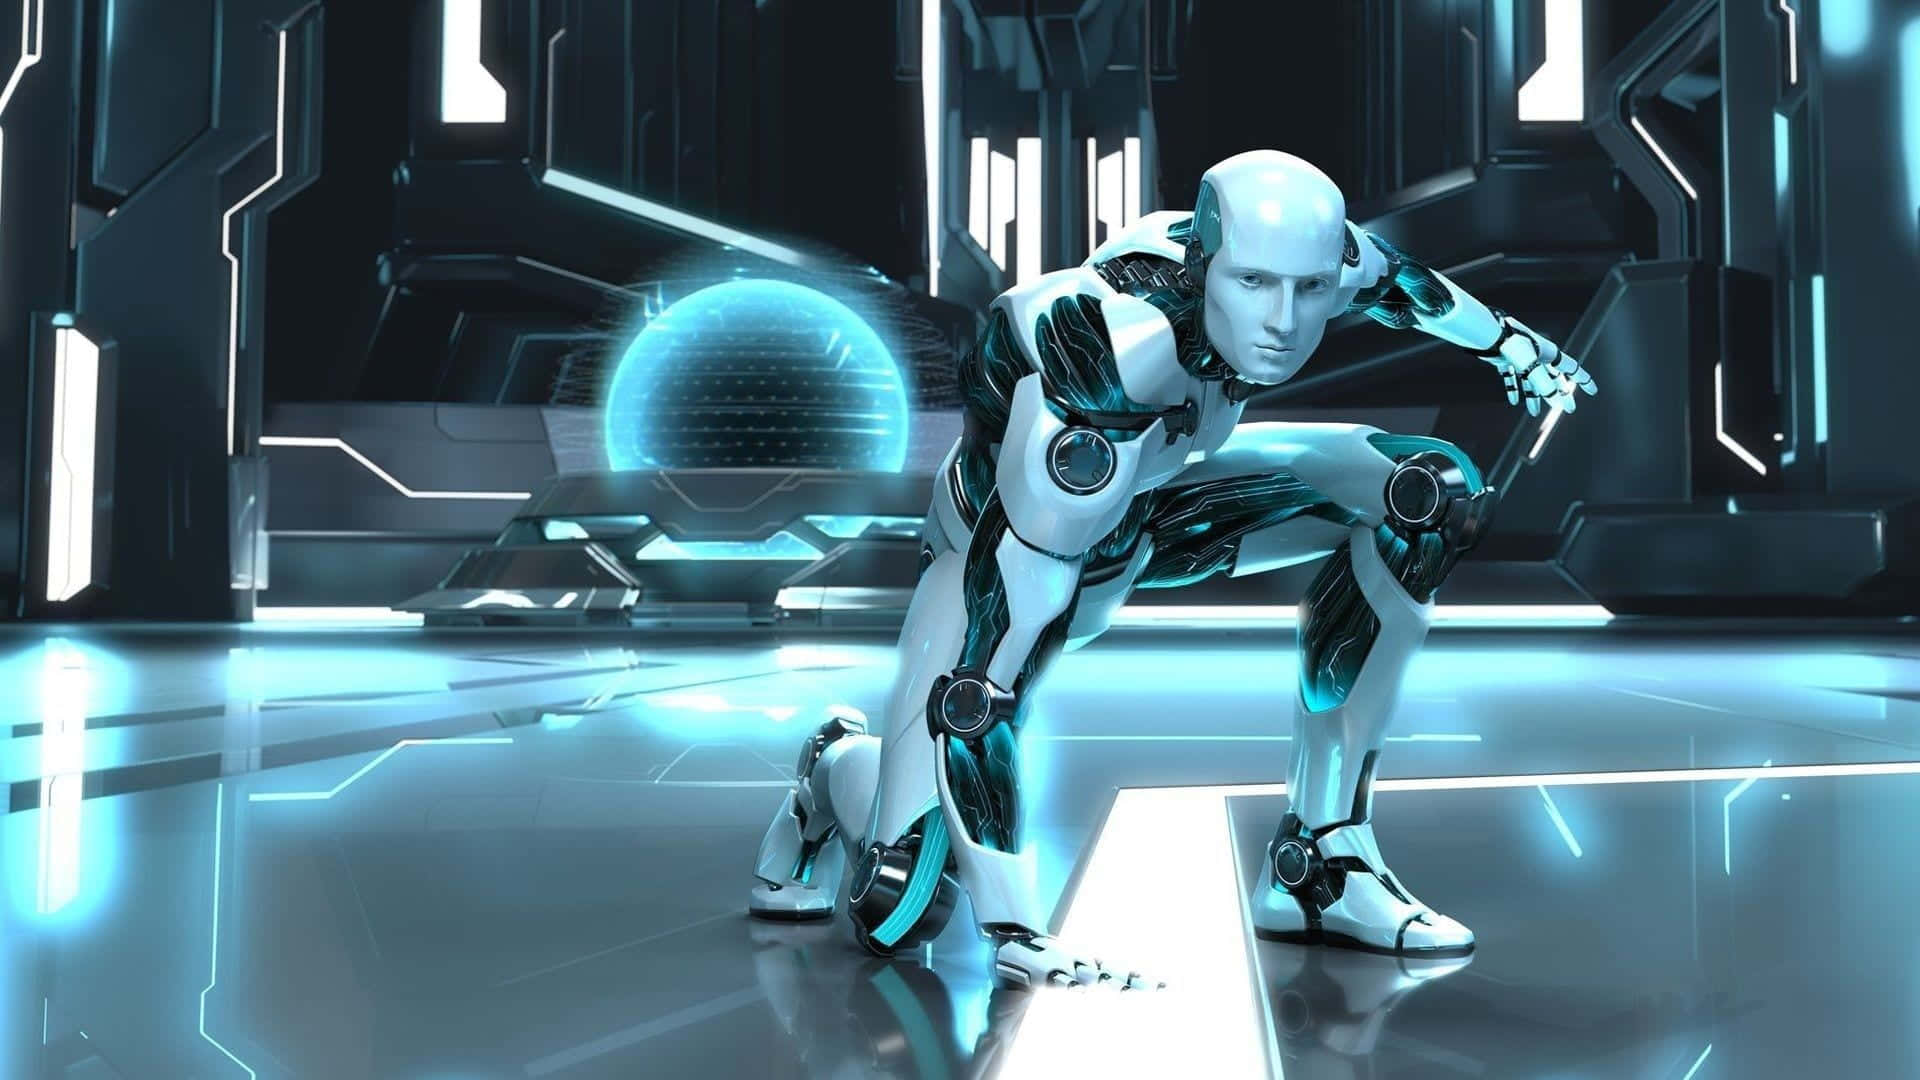 Unrobot È In Piedi In Un Ambiente Futuristico. Sfondo